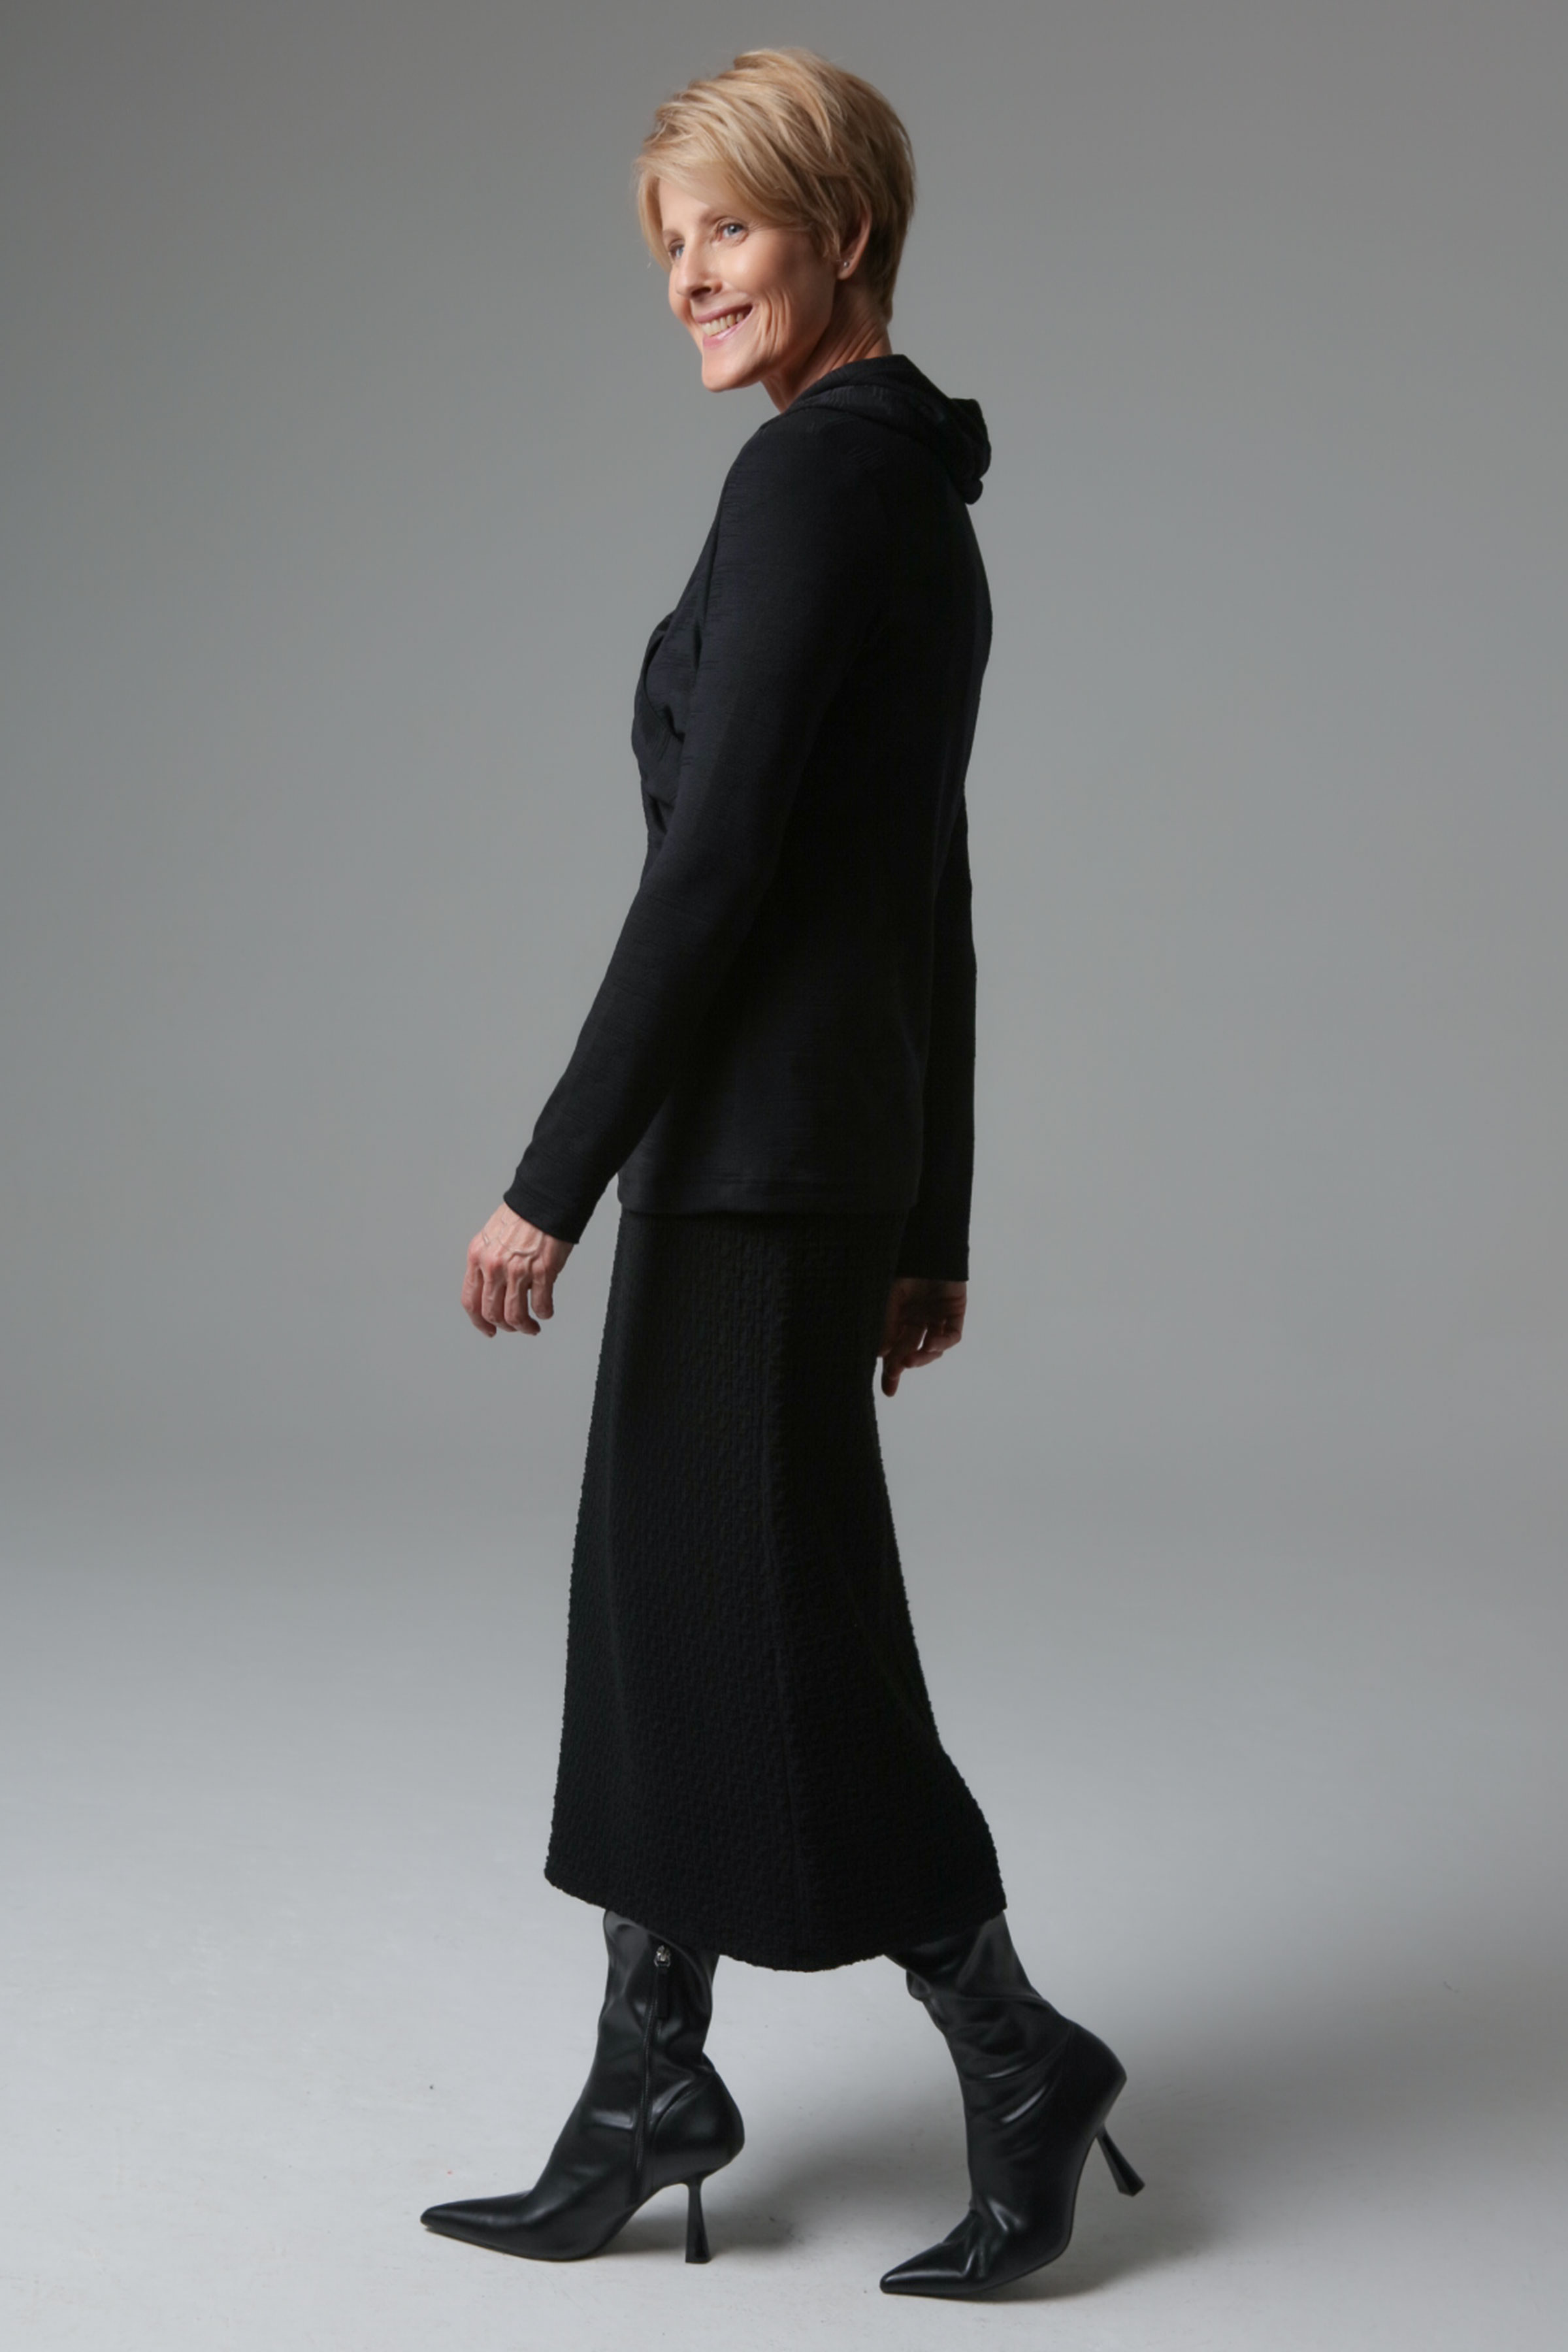 Блуза эластичная с капюшоном 00 Черный (noir) от Lesel (Лесель)! Заказывайте по ✆ 8 (800) 777 02 37